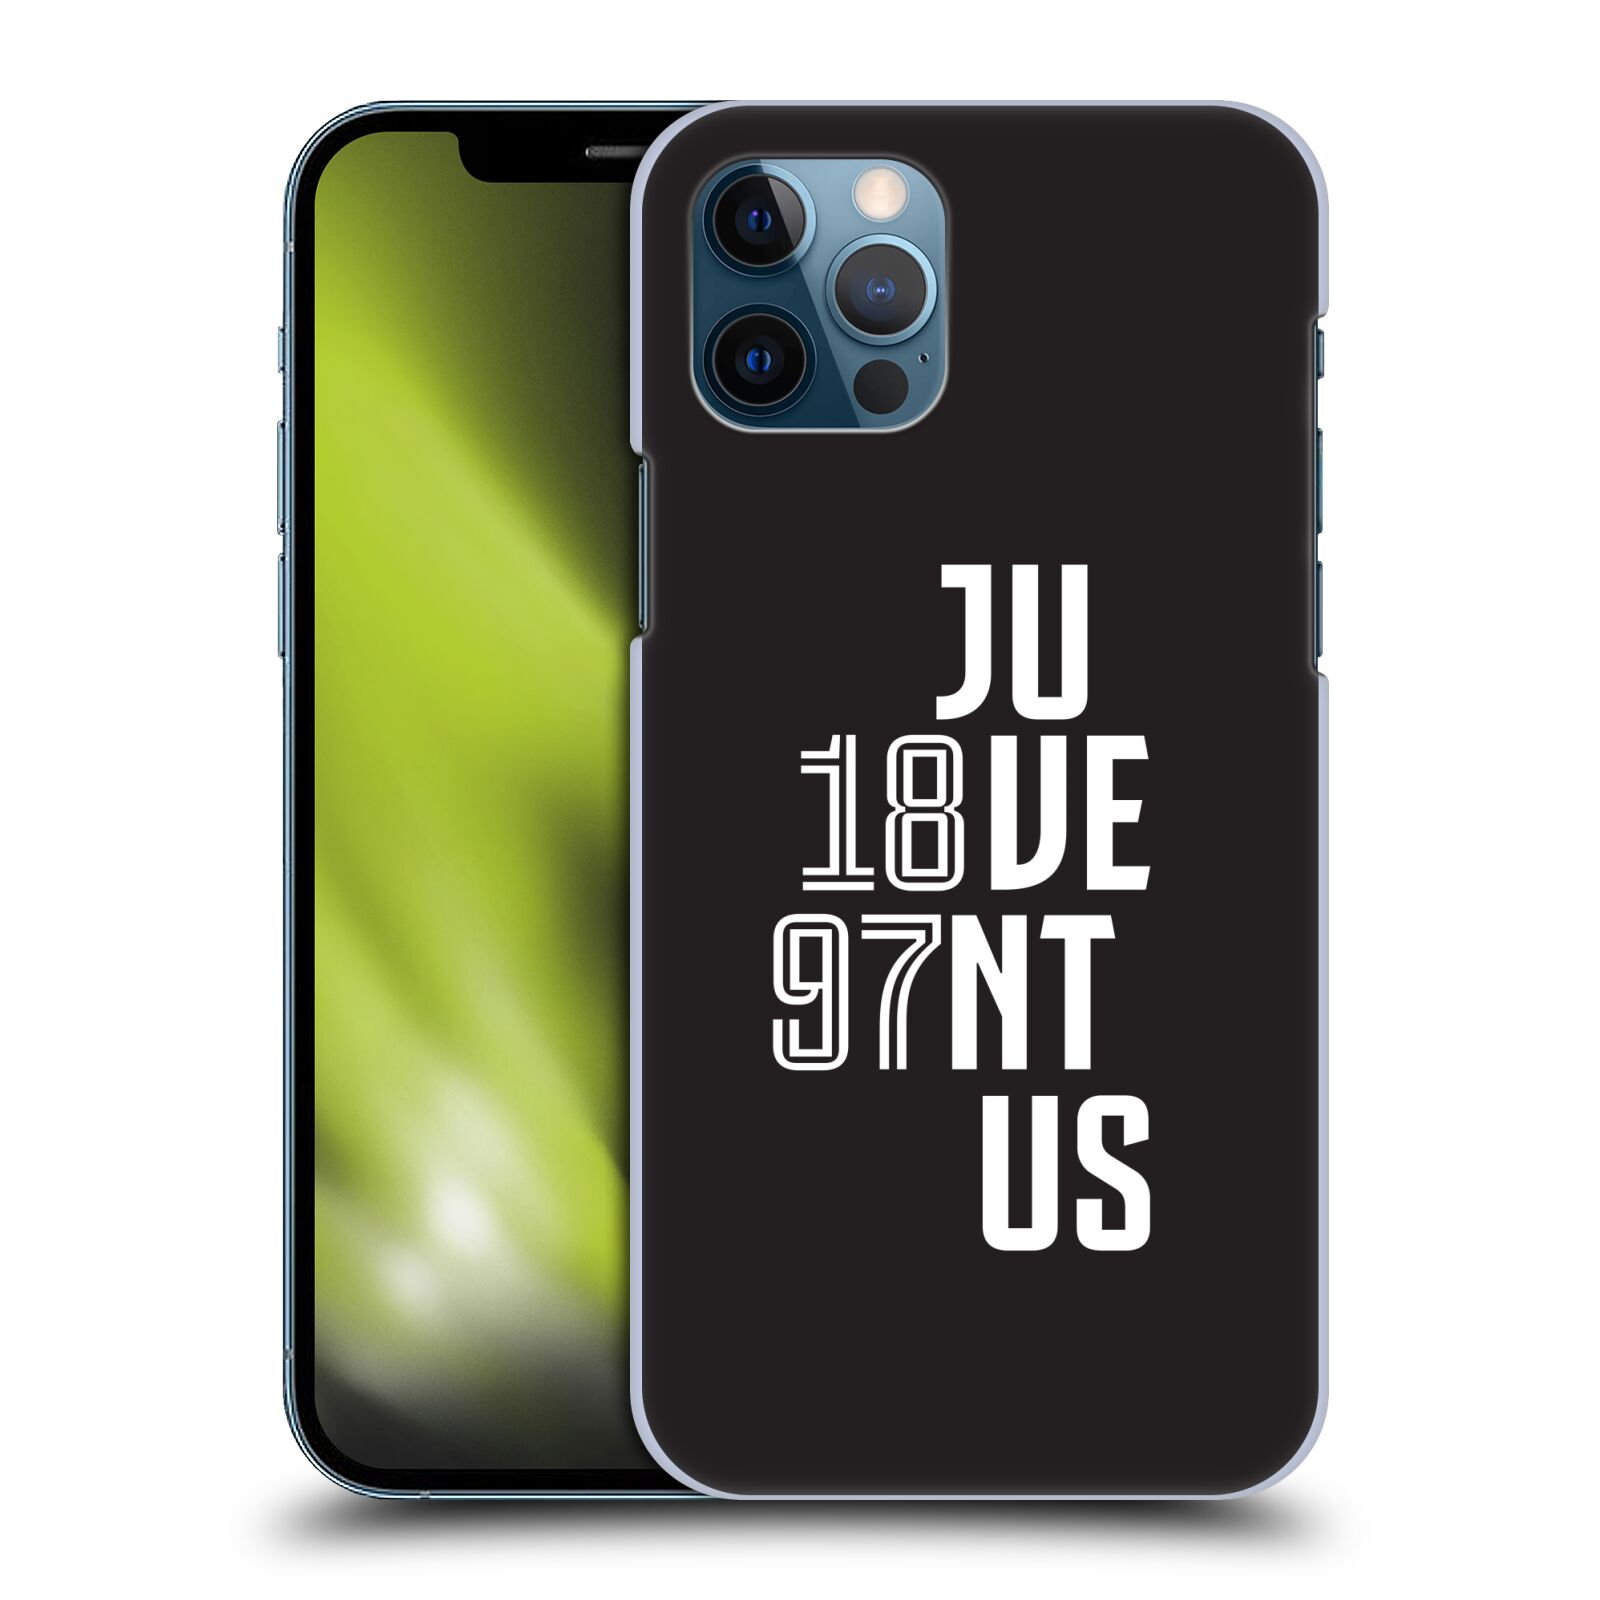 Zadní obal pro mobil Apple iPhone 12 / iPhone 12 Pro - HEAD CASE - Fotbalový klub Juventus - Velké písmo